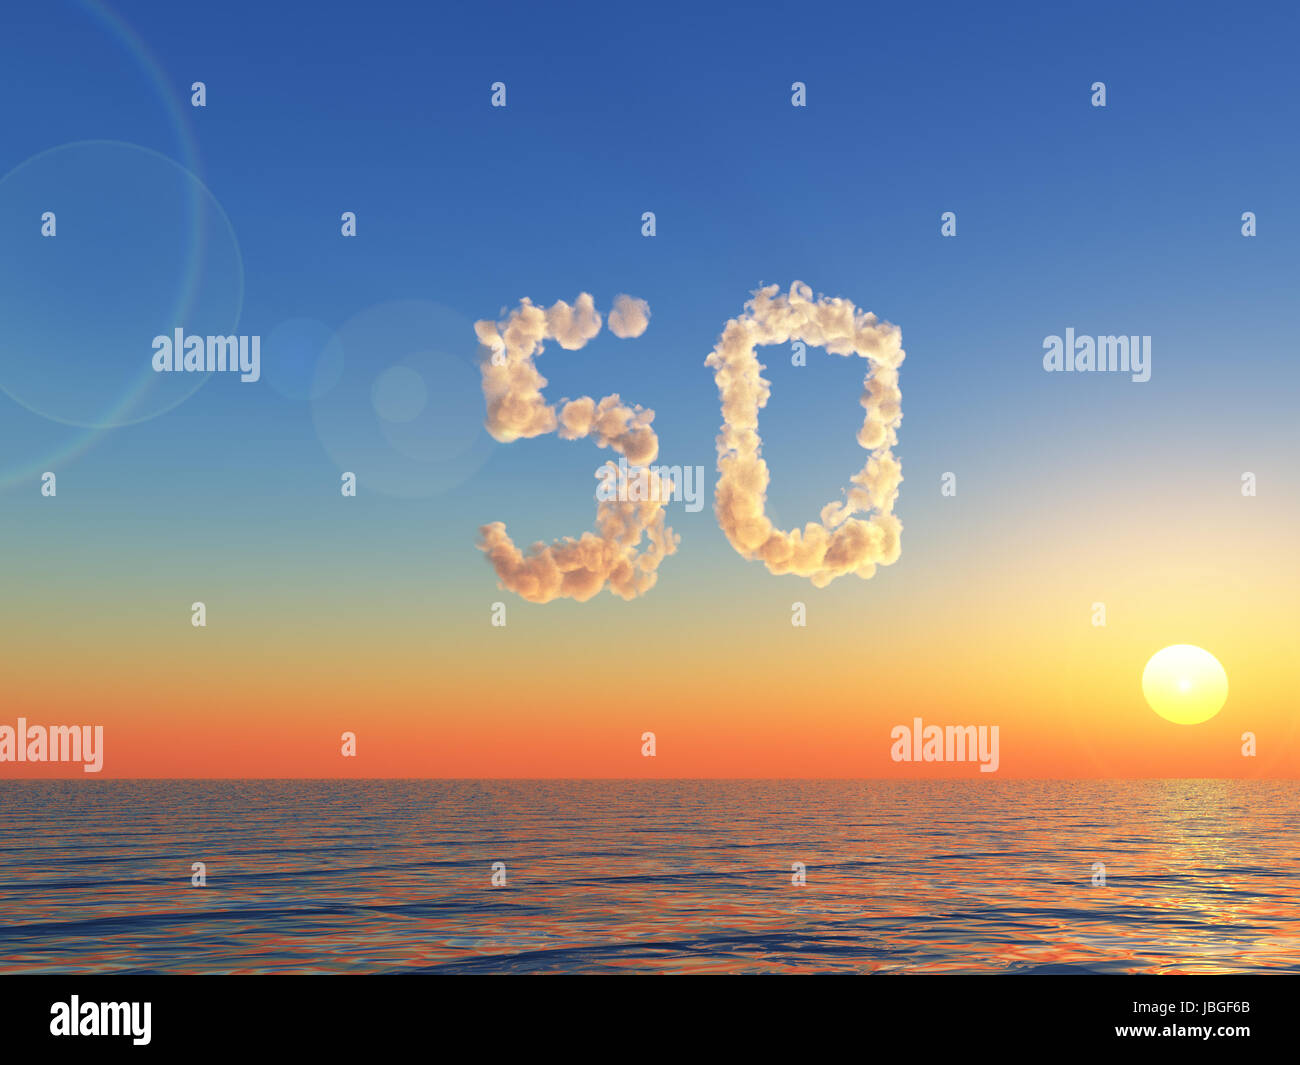 wolken bilden die zahl fünfzig - 3d illustration Stock Photo - Alamy